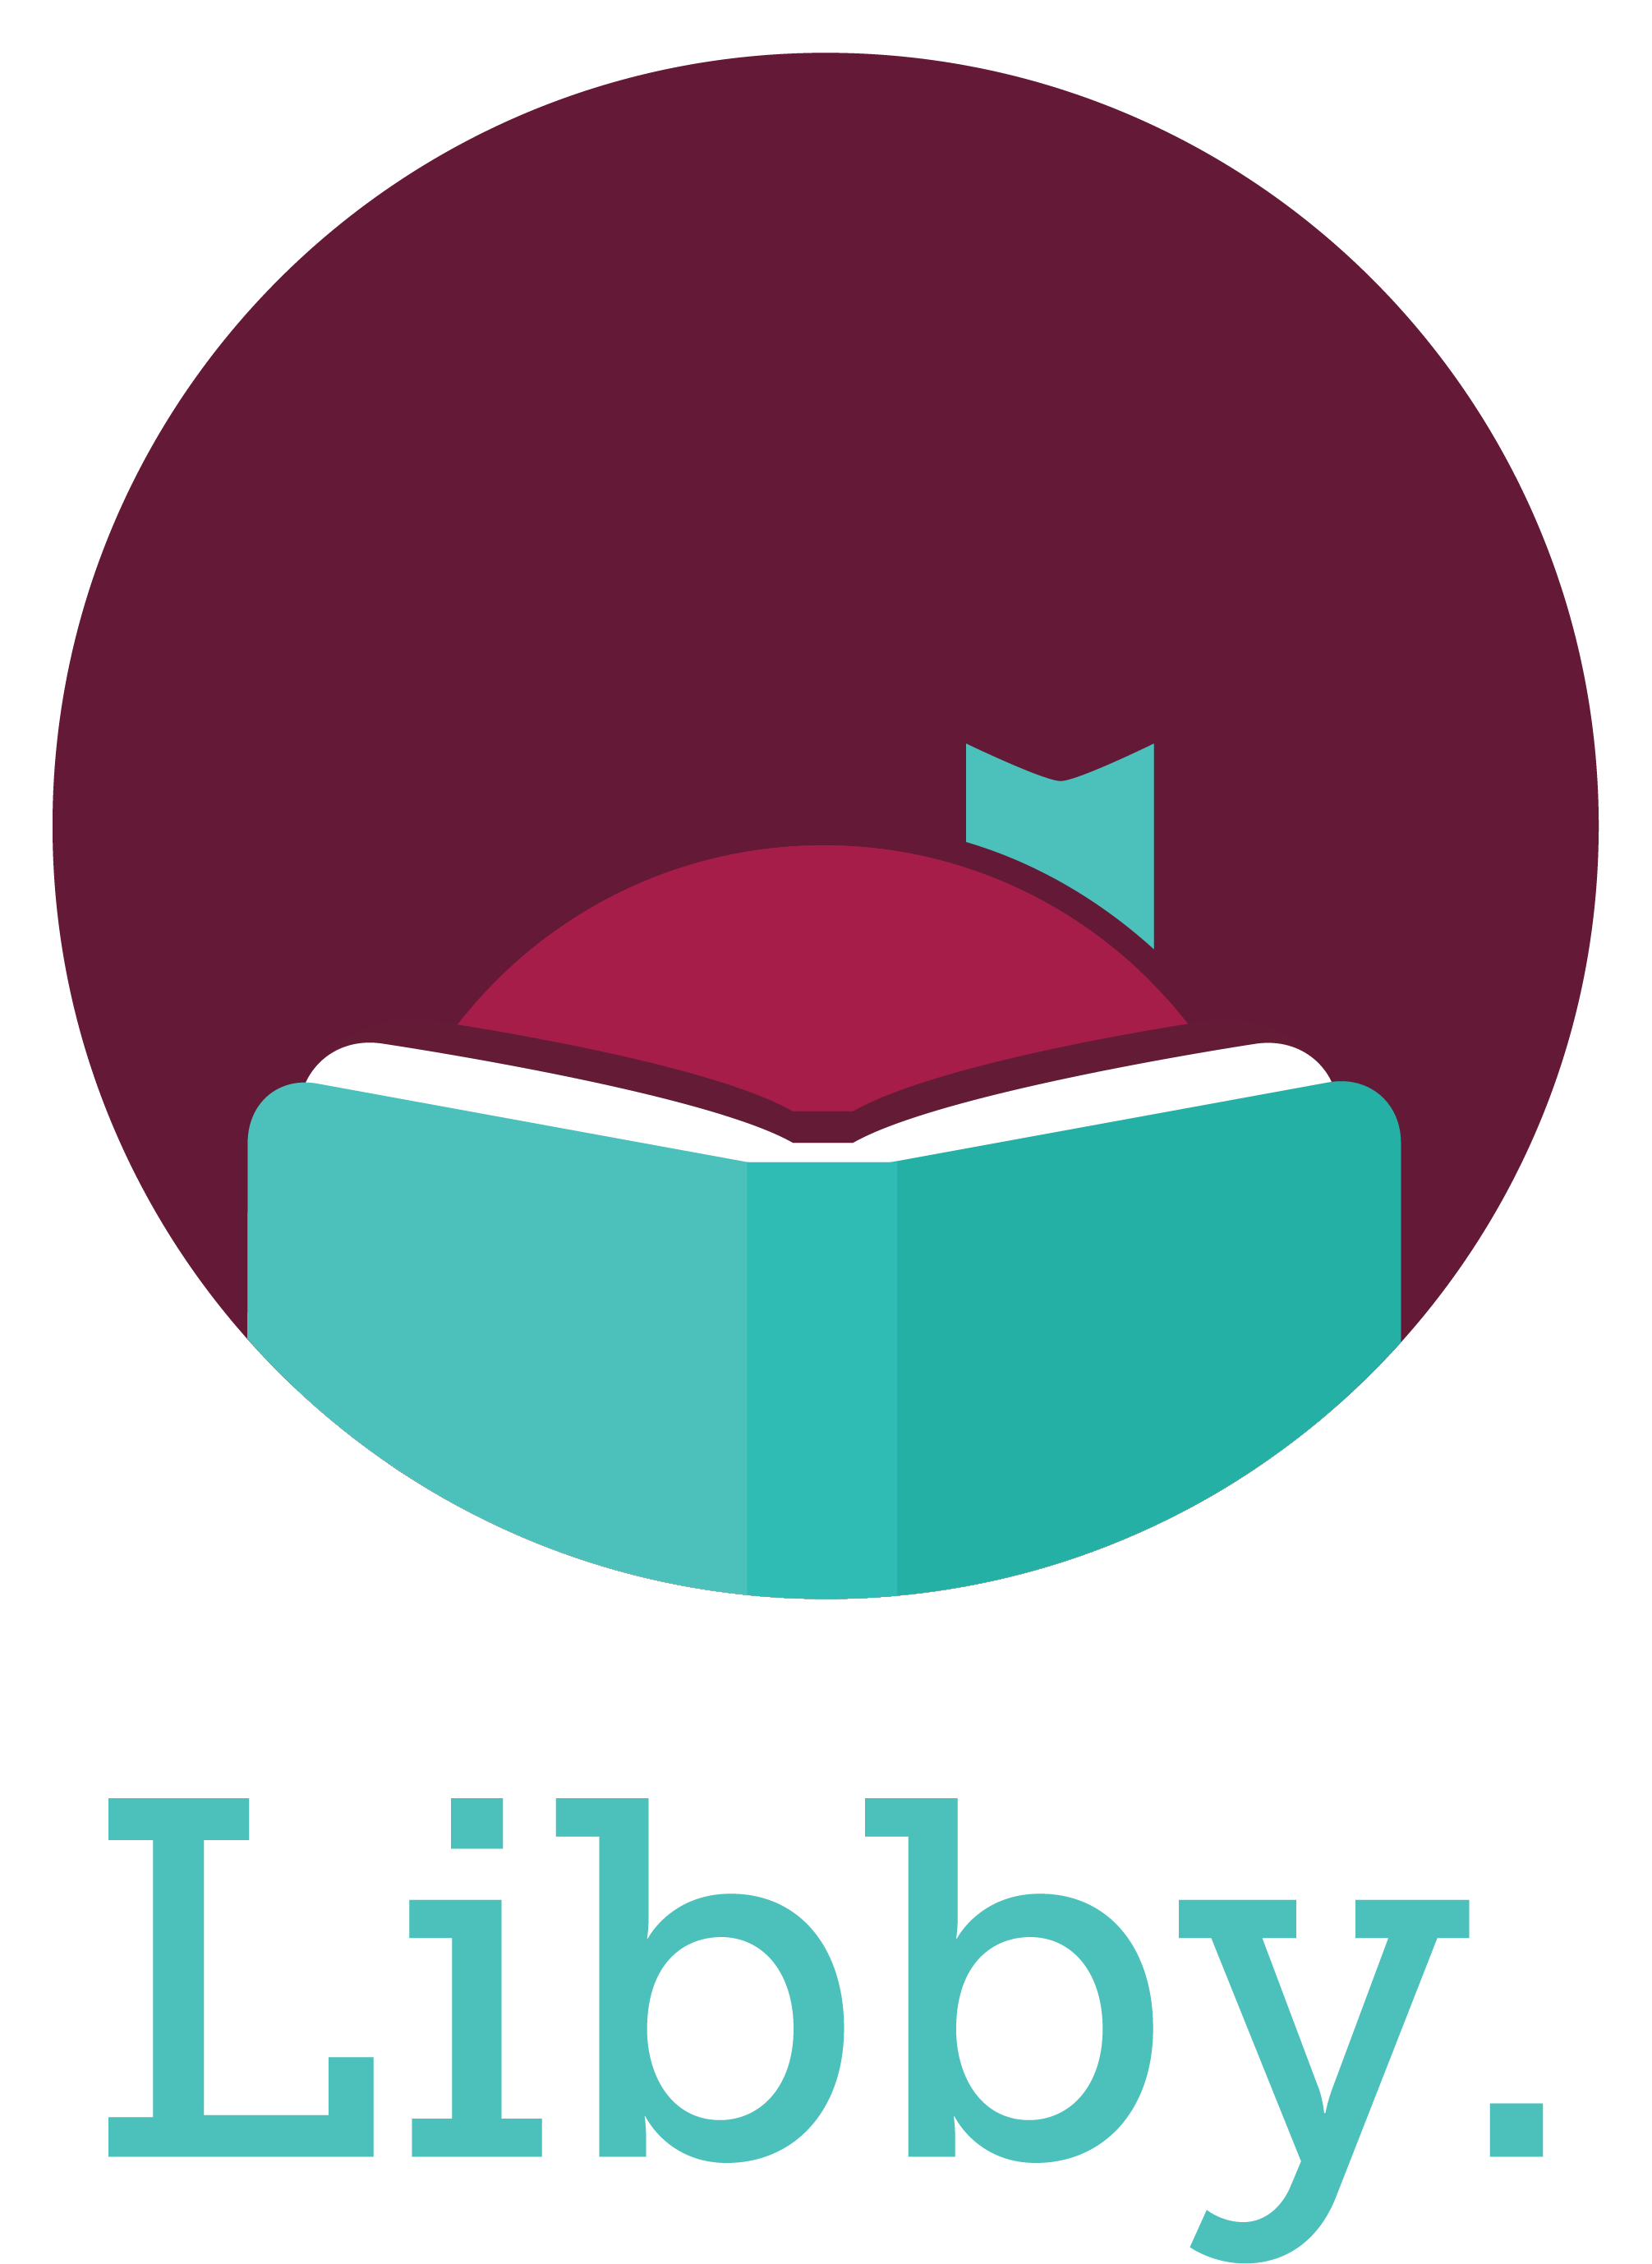 Branding logo for Libby ebooks